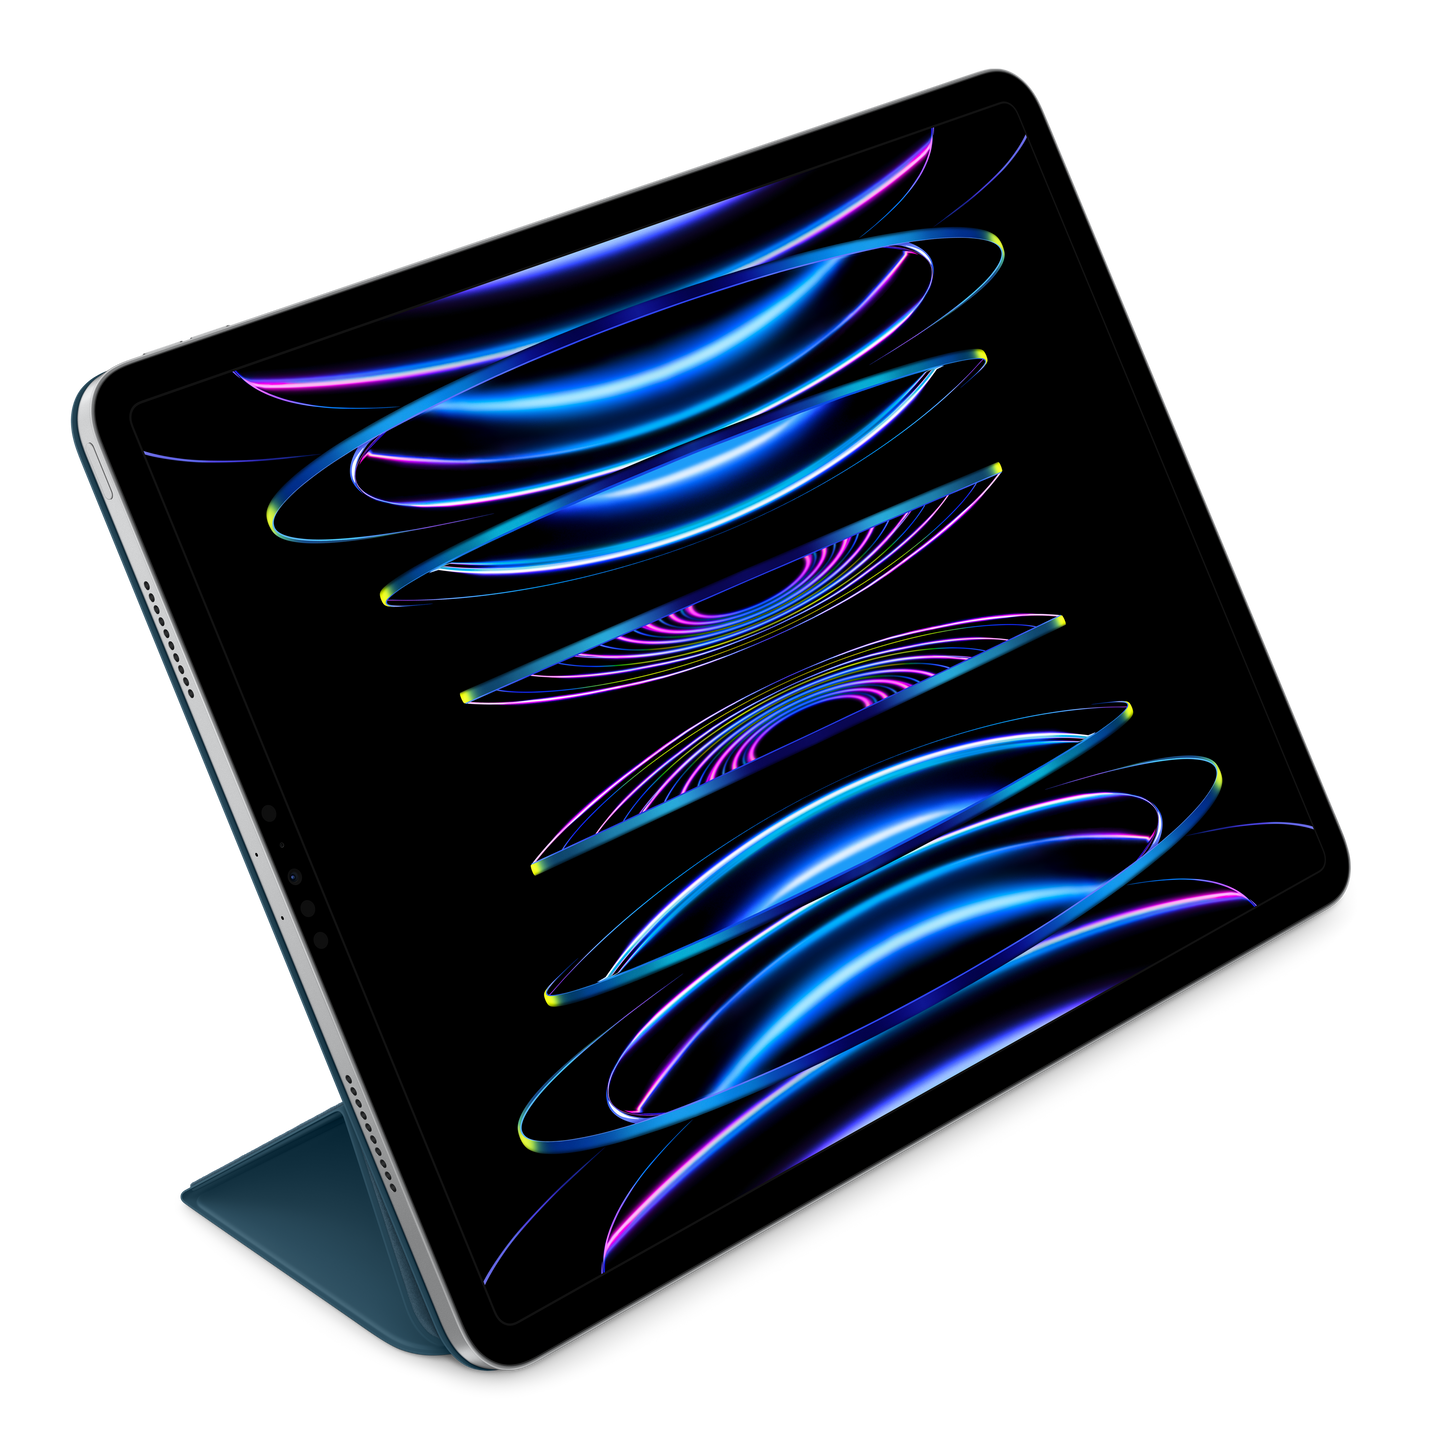 Case Smart Folio para el iPad Pro de 12,9 pulgadas (6.ª generación)